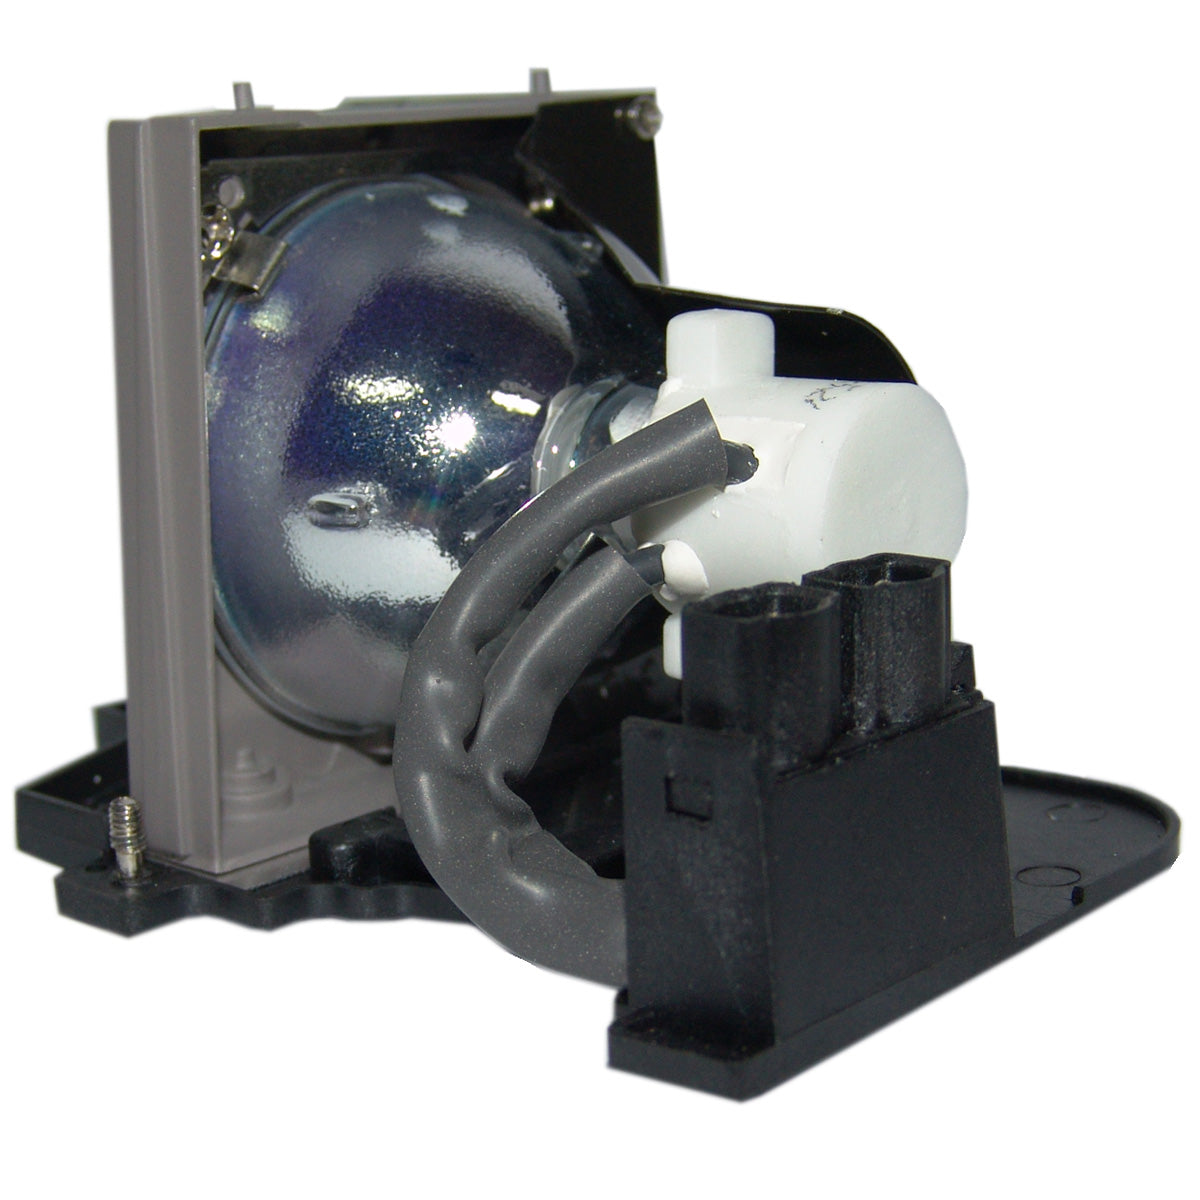 PLUS U6-112 Phoenix Projector Lamp Module